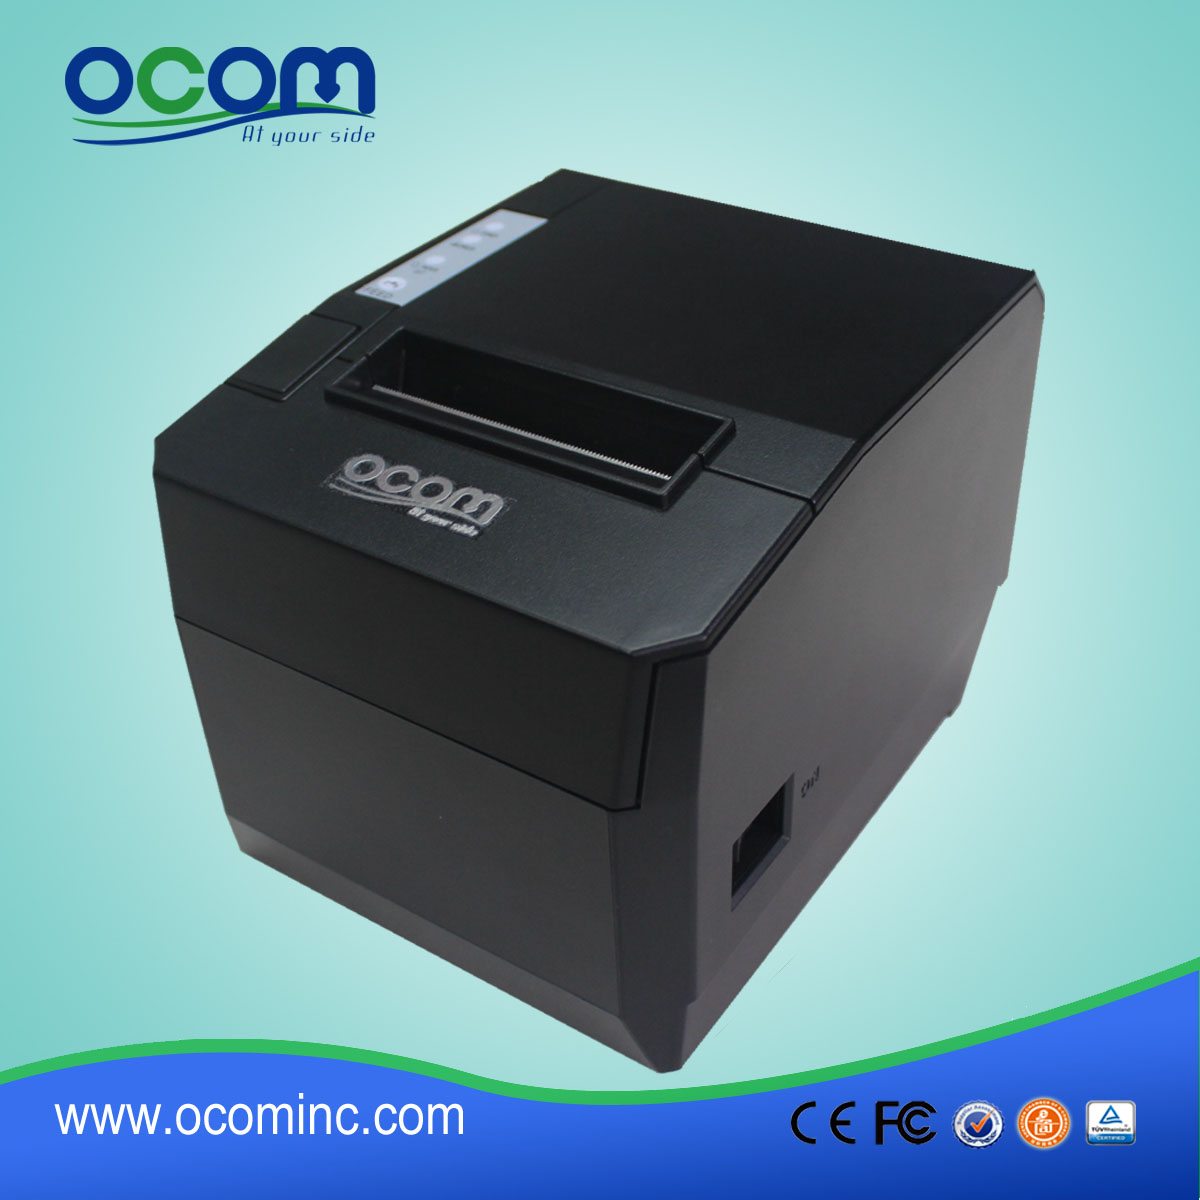 OCPP-88A Epson kompatibel 80mm Warteschlange Ticket Thermodrucker mit Autocutter